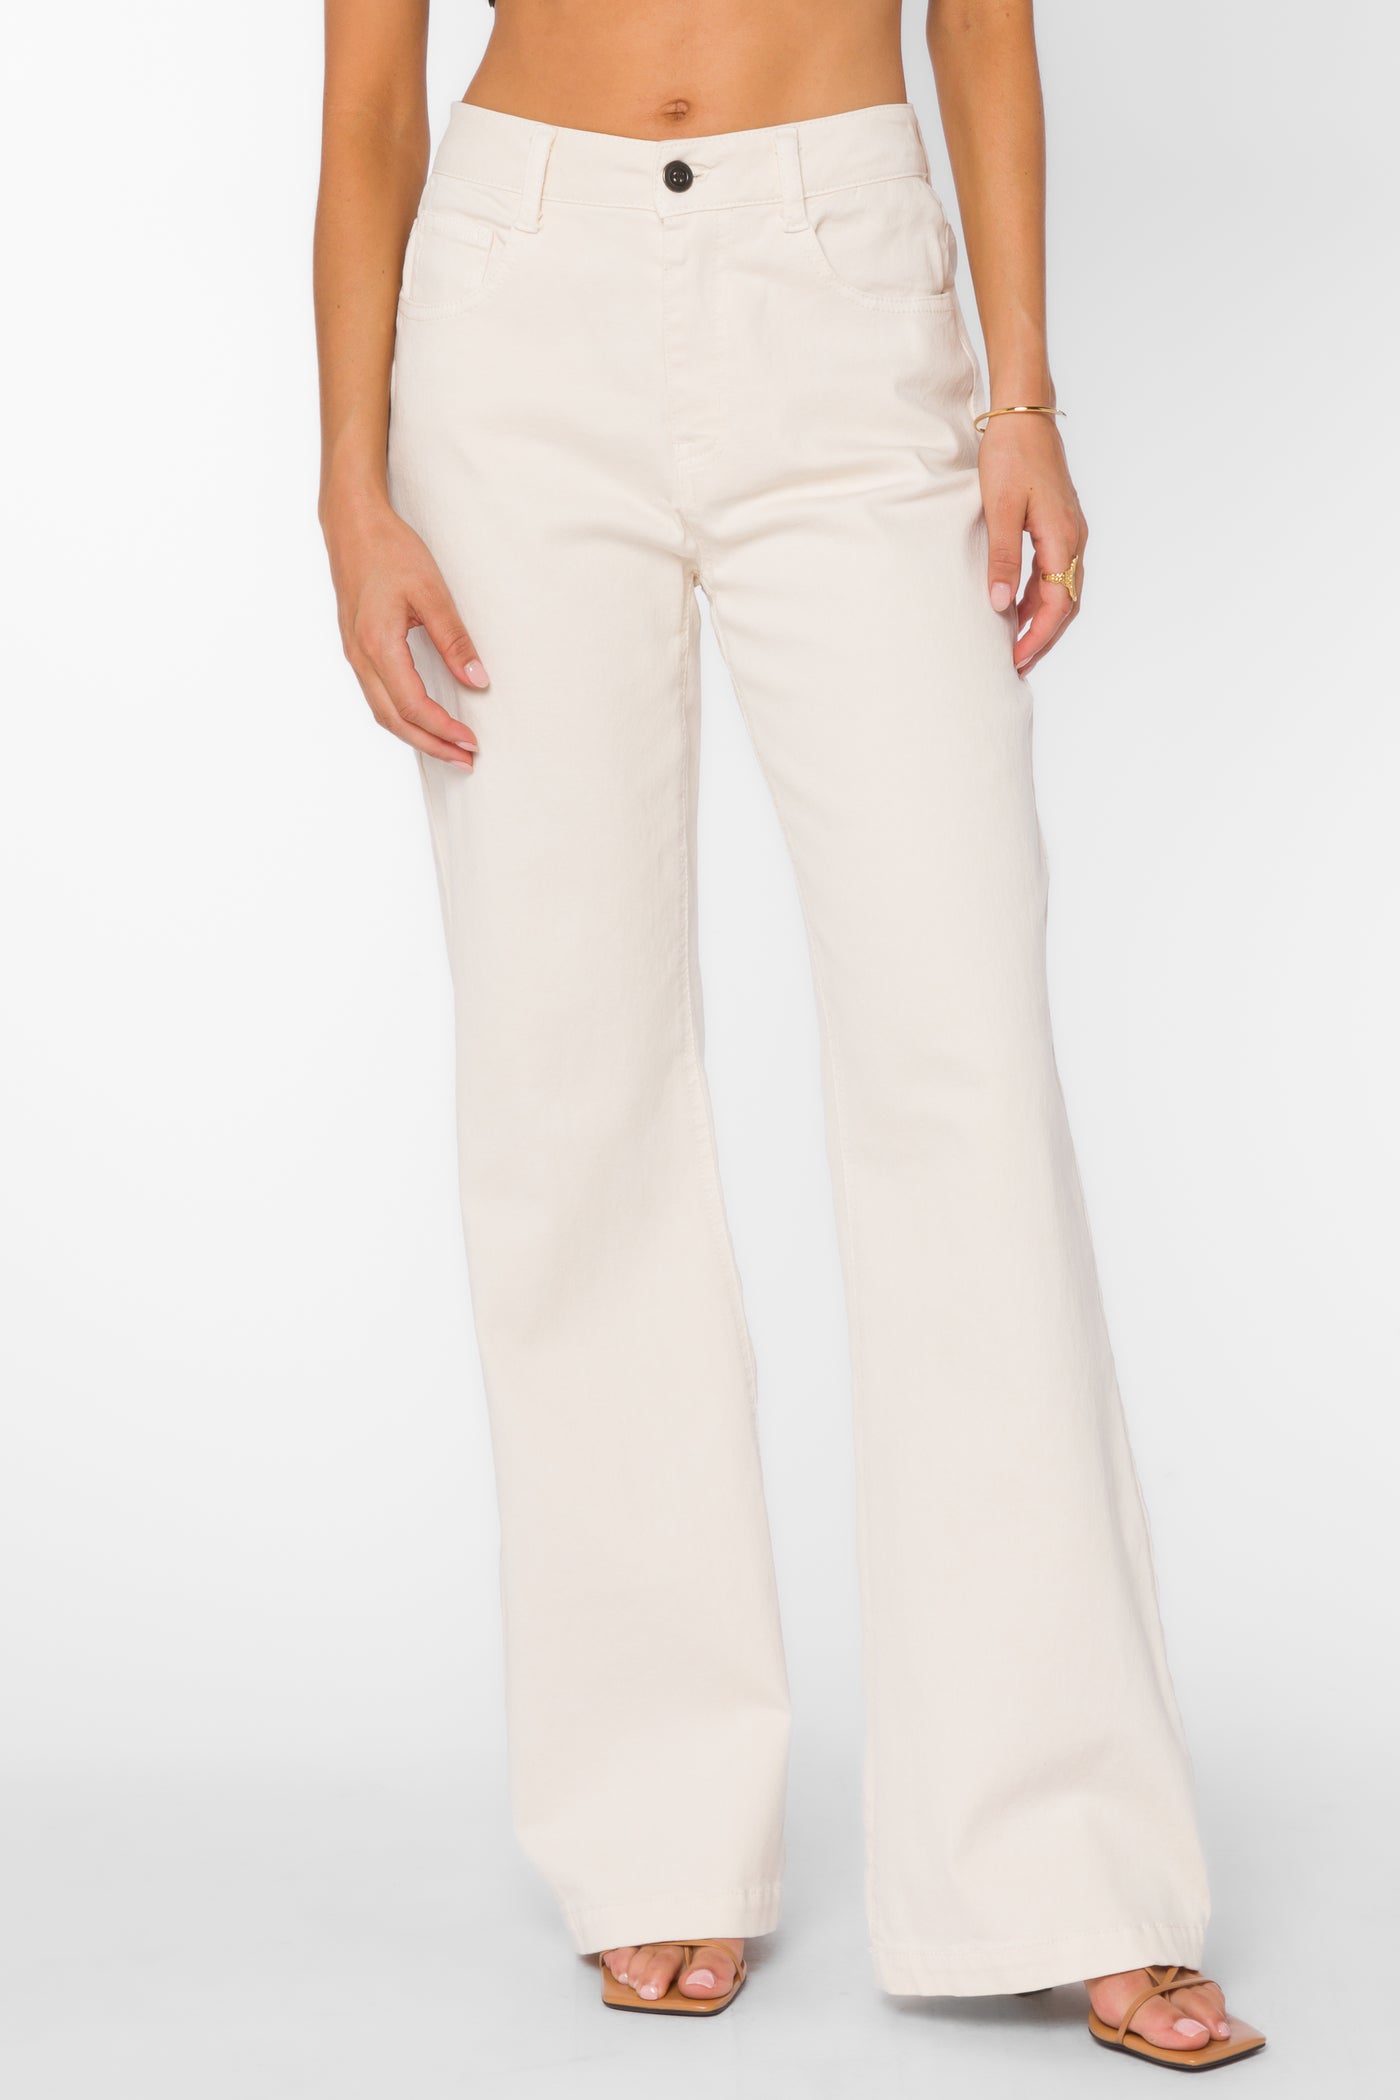 Marsha Ivory Jeans - Bottoms - Velvet Heart Clothing